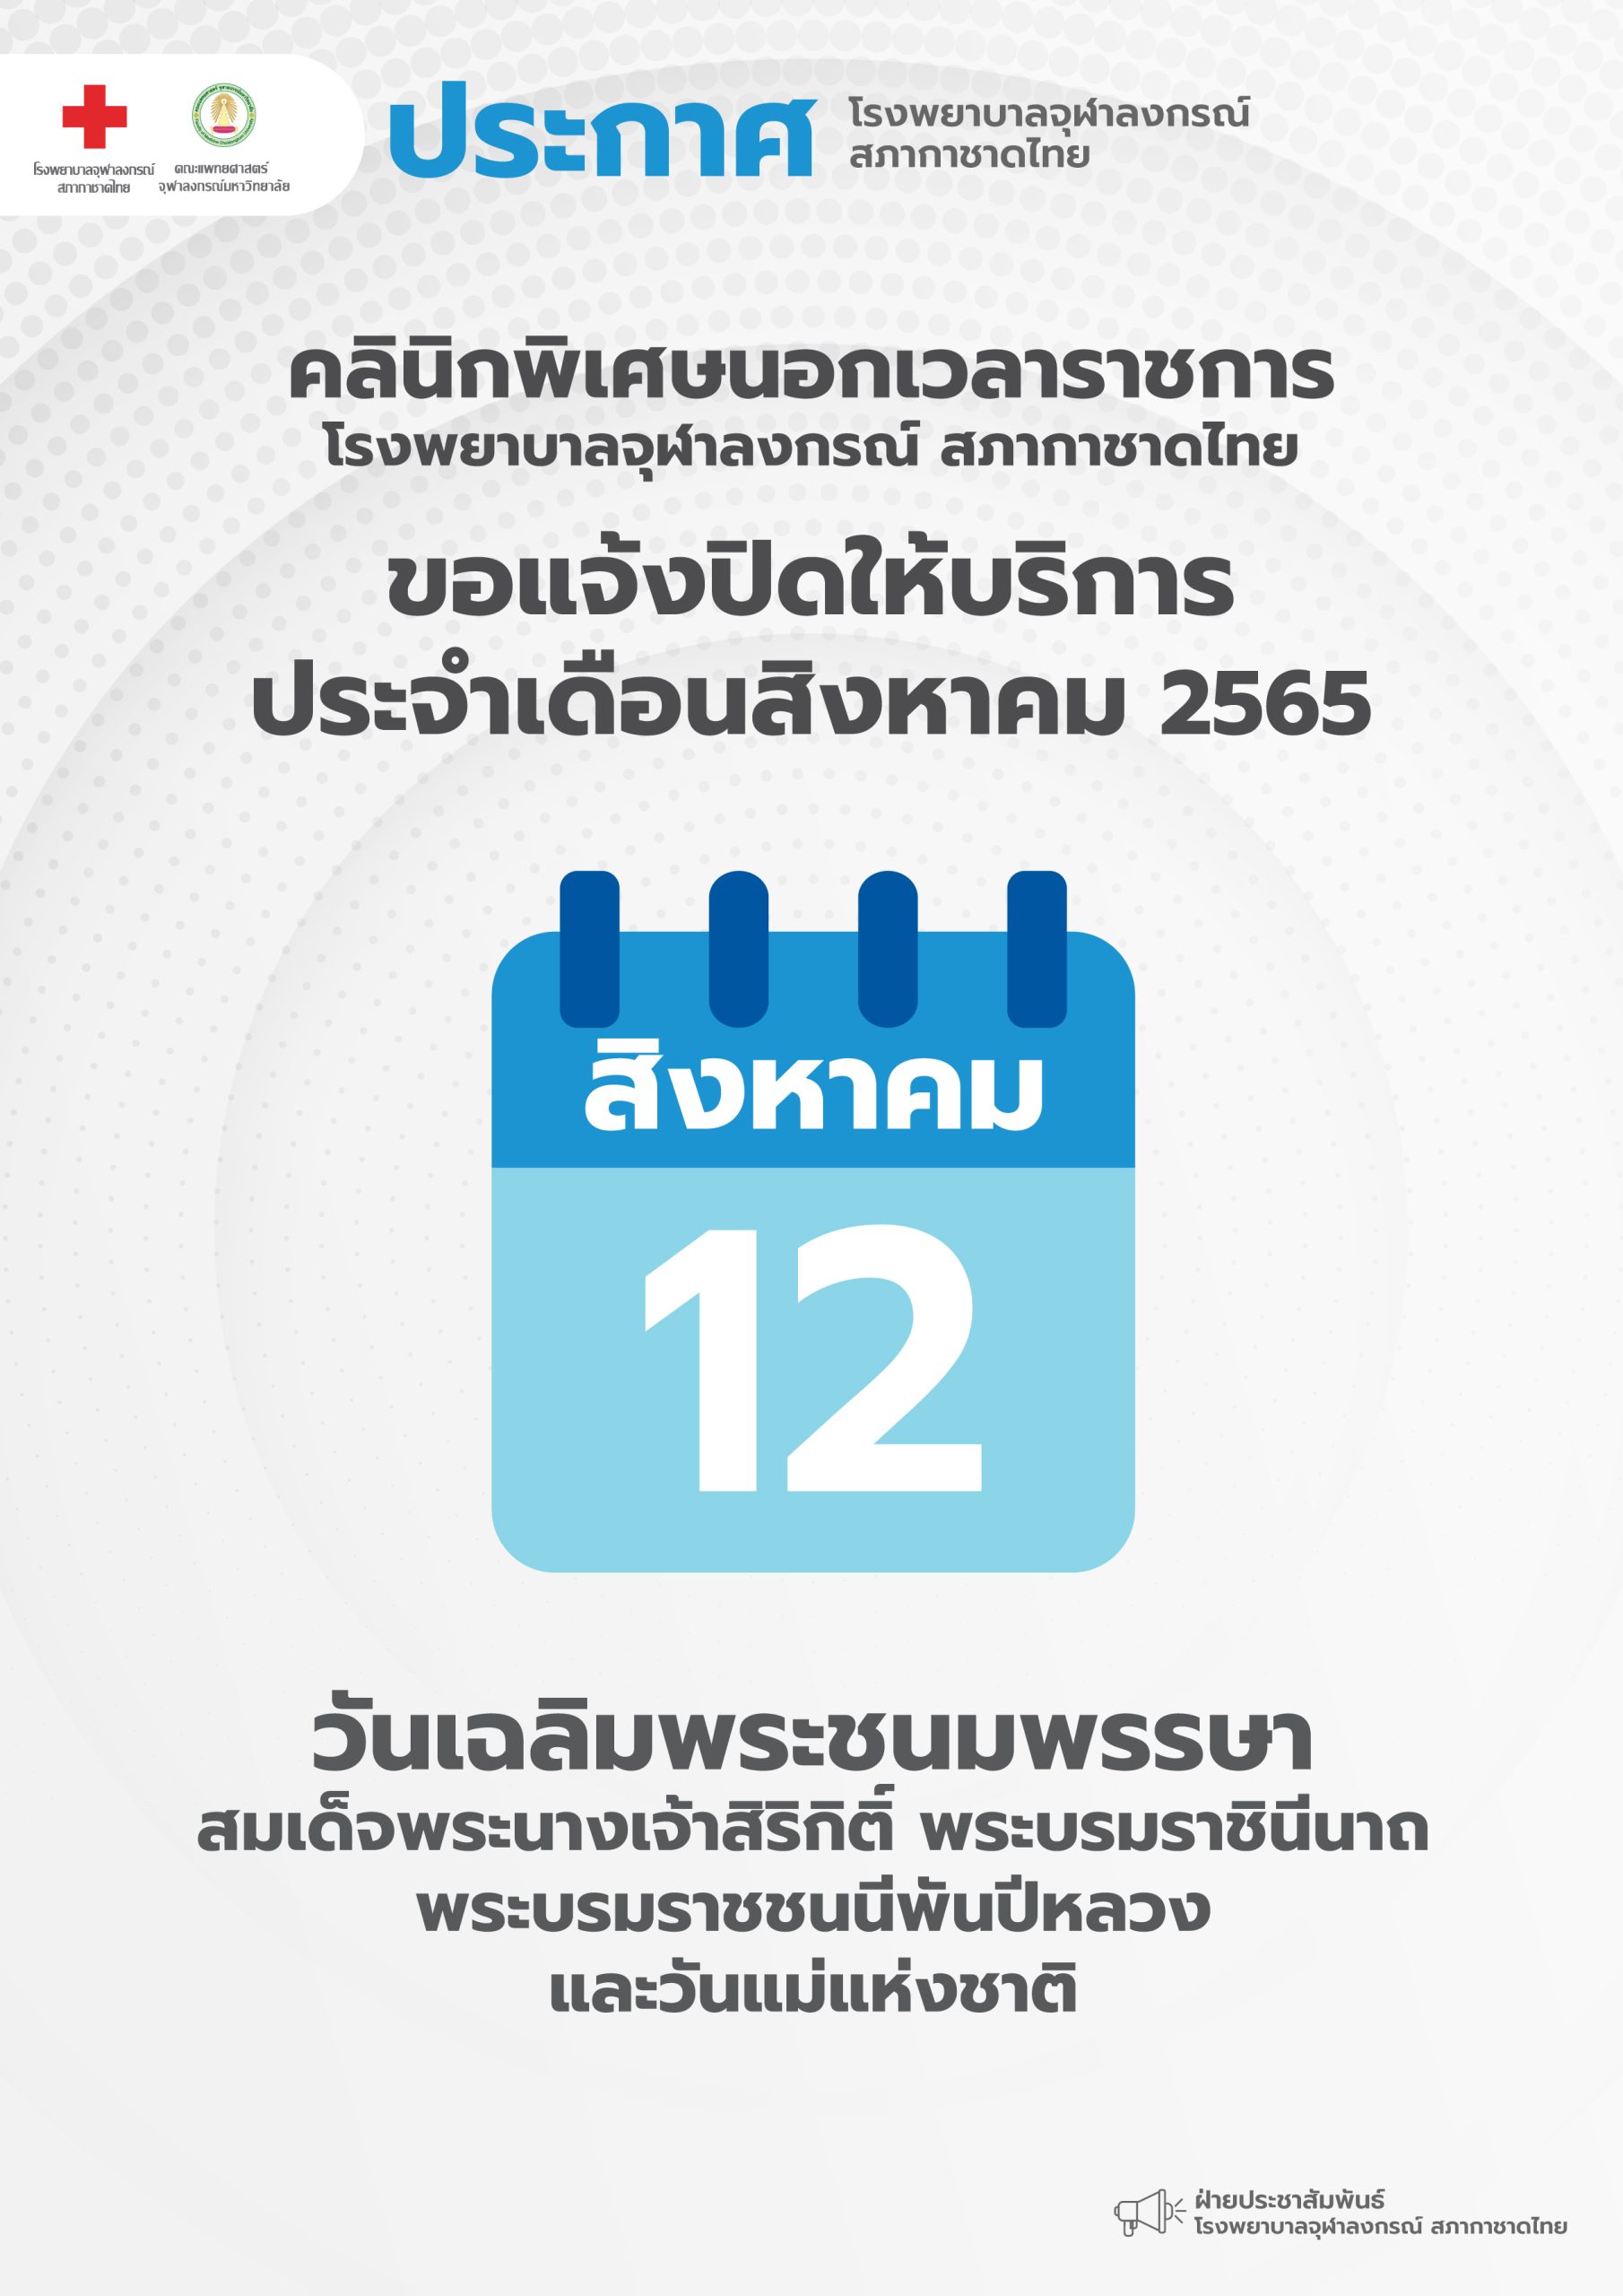 คลินิกพิเศษนอกเวลาราชการโรงพยาบาลจุฬาลงกรณ์ สภากาชาดไทย ขอแจ้งปิดให้บริการประจำเดือนสิงหาคม 2565